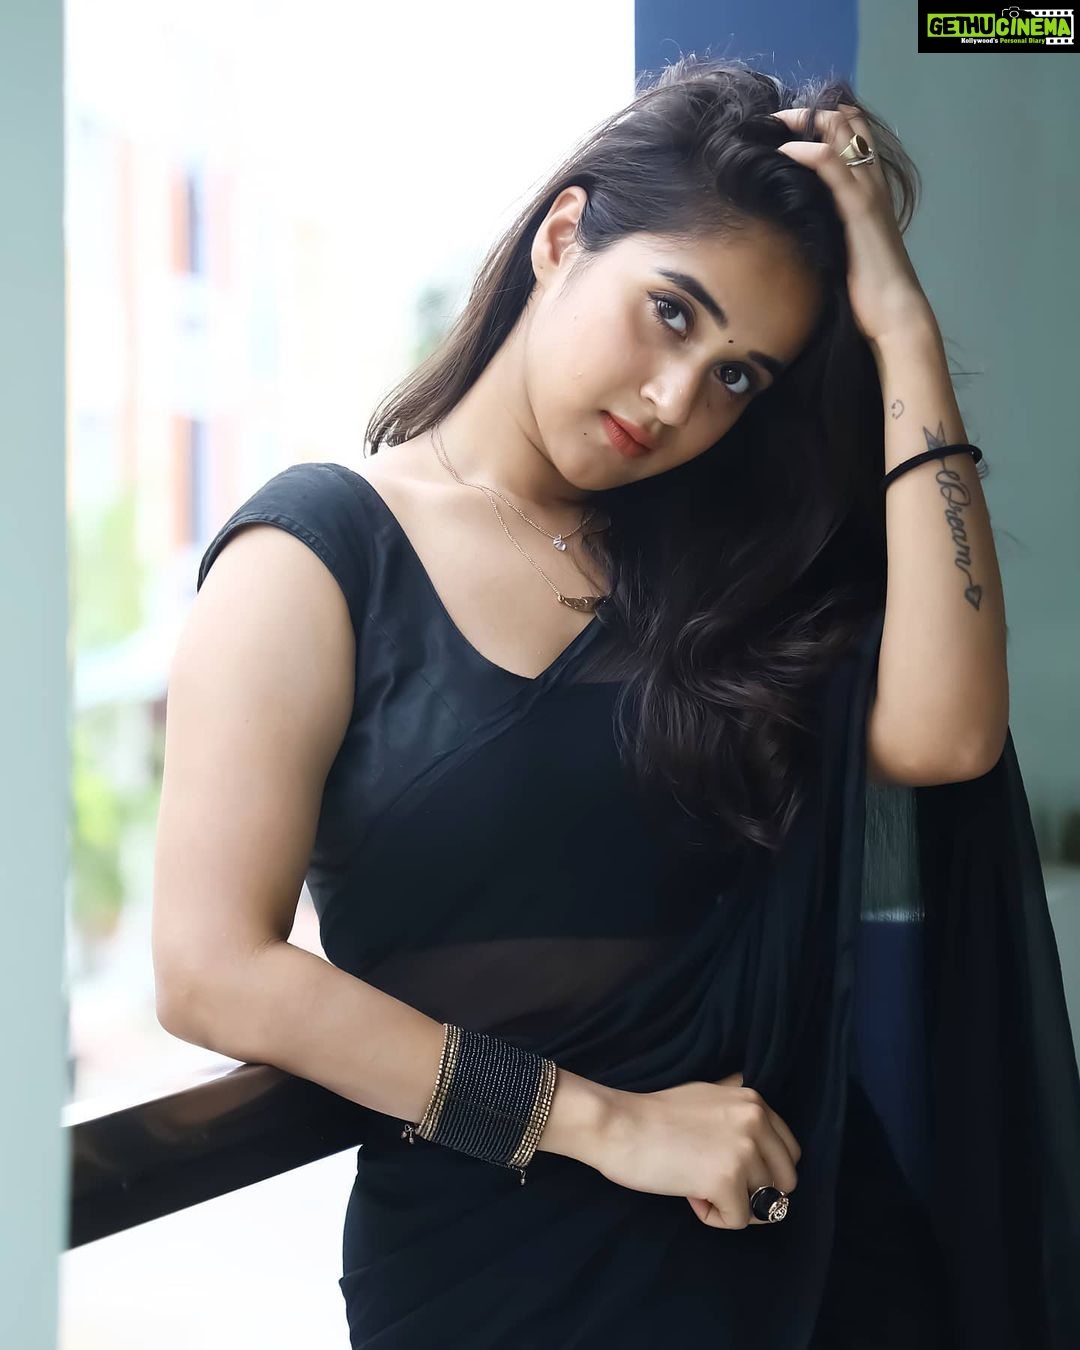 Actress Deepthi Sunaina HD Photos and Wallpapers June 2020 - Gethu Cinema